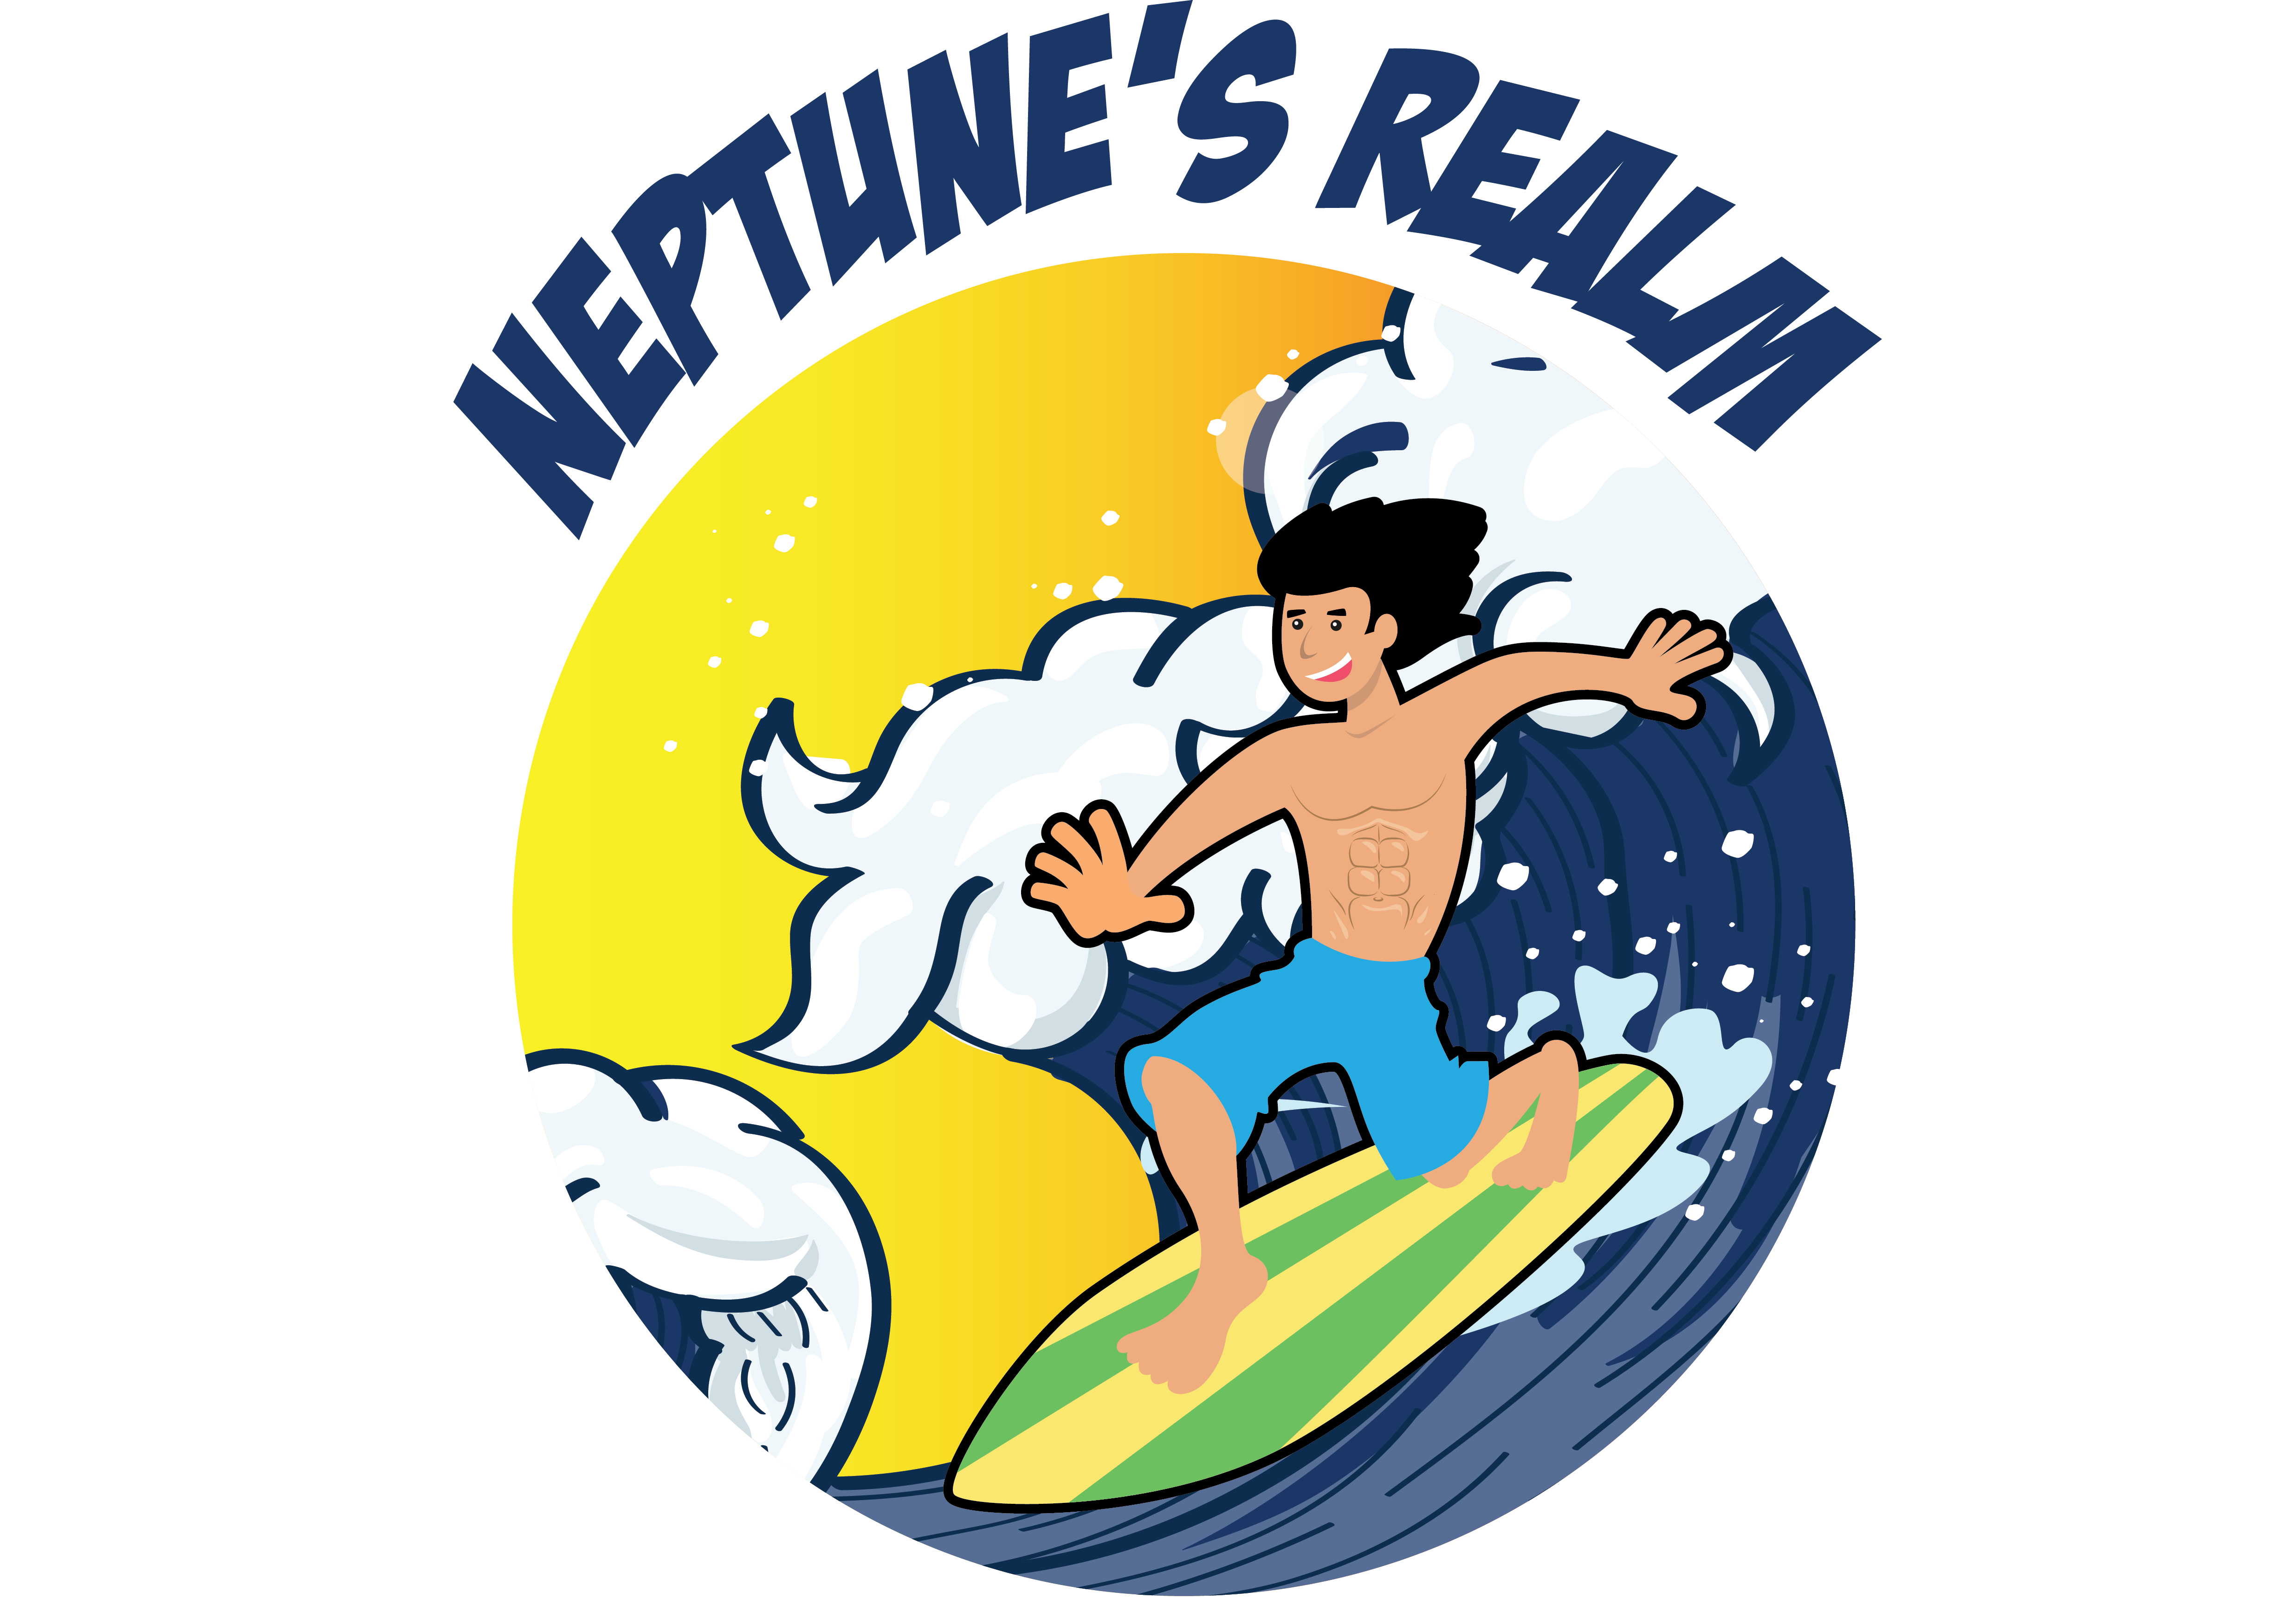 Neptune's Realm